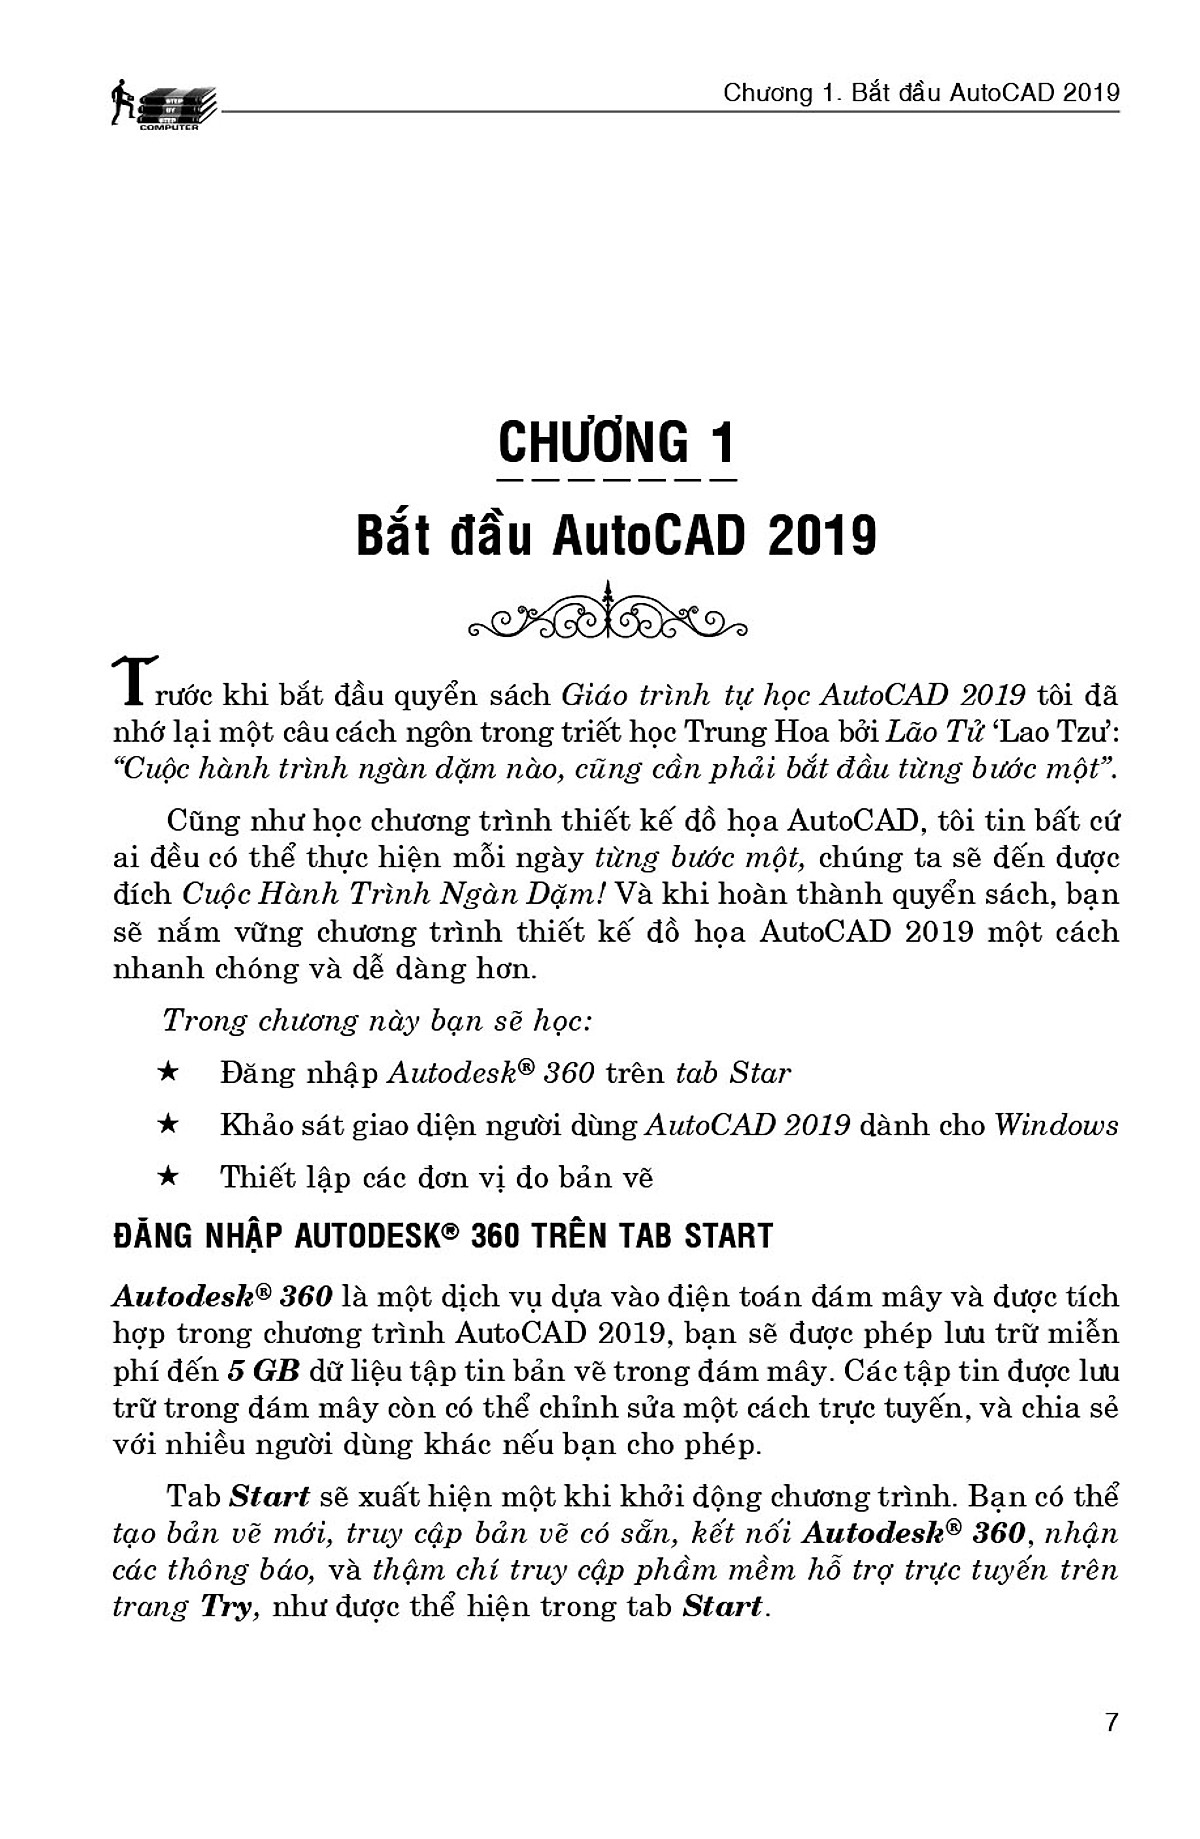 Giáo Trình Tự Học AutoCAD 2019 Thực Hành Bằng Hình Minh Họa (Kèm CD Bài Tập) (Tái bản năm 2020)